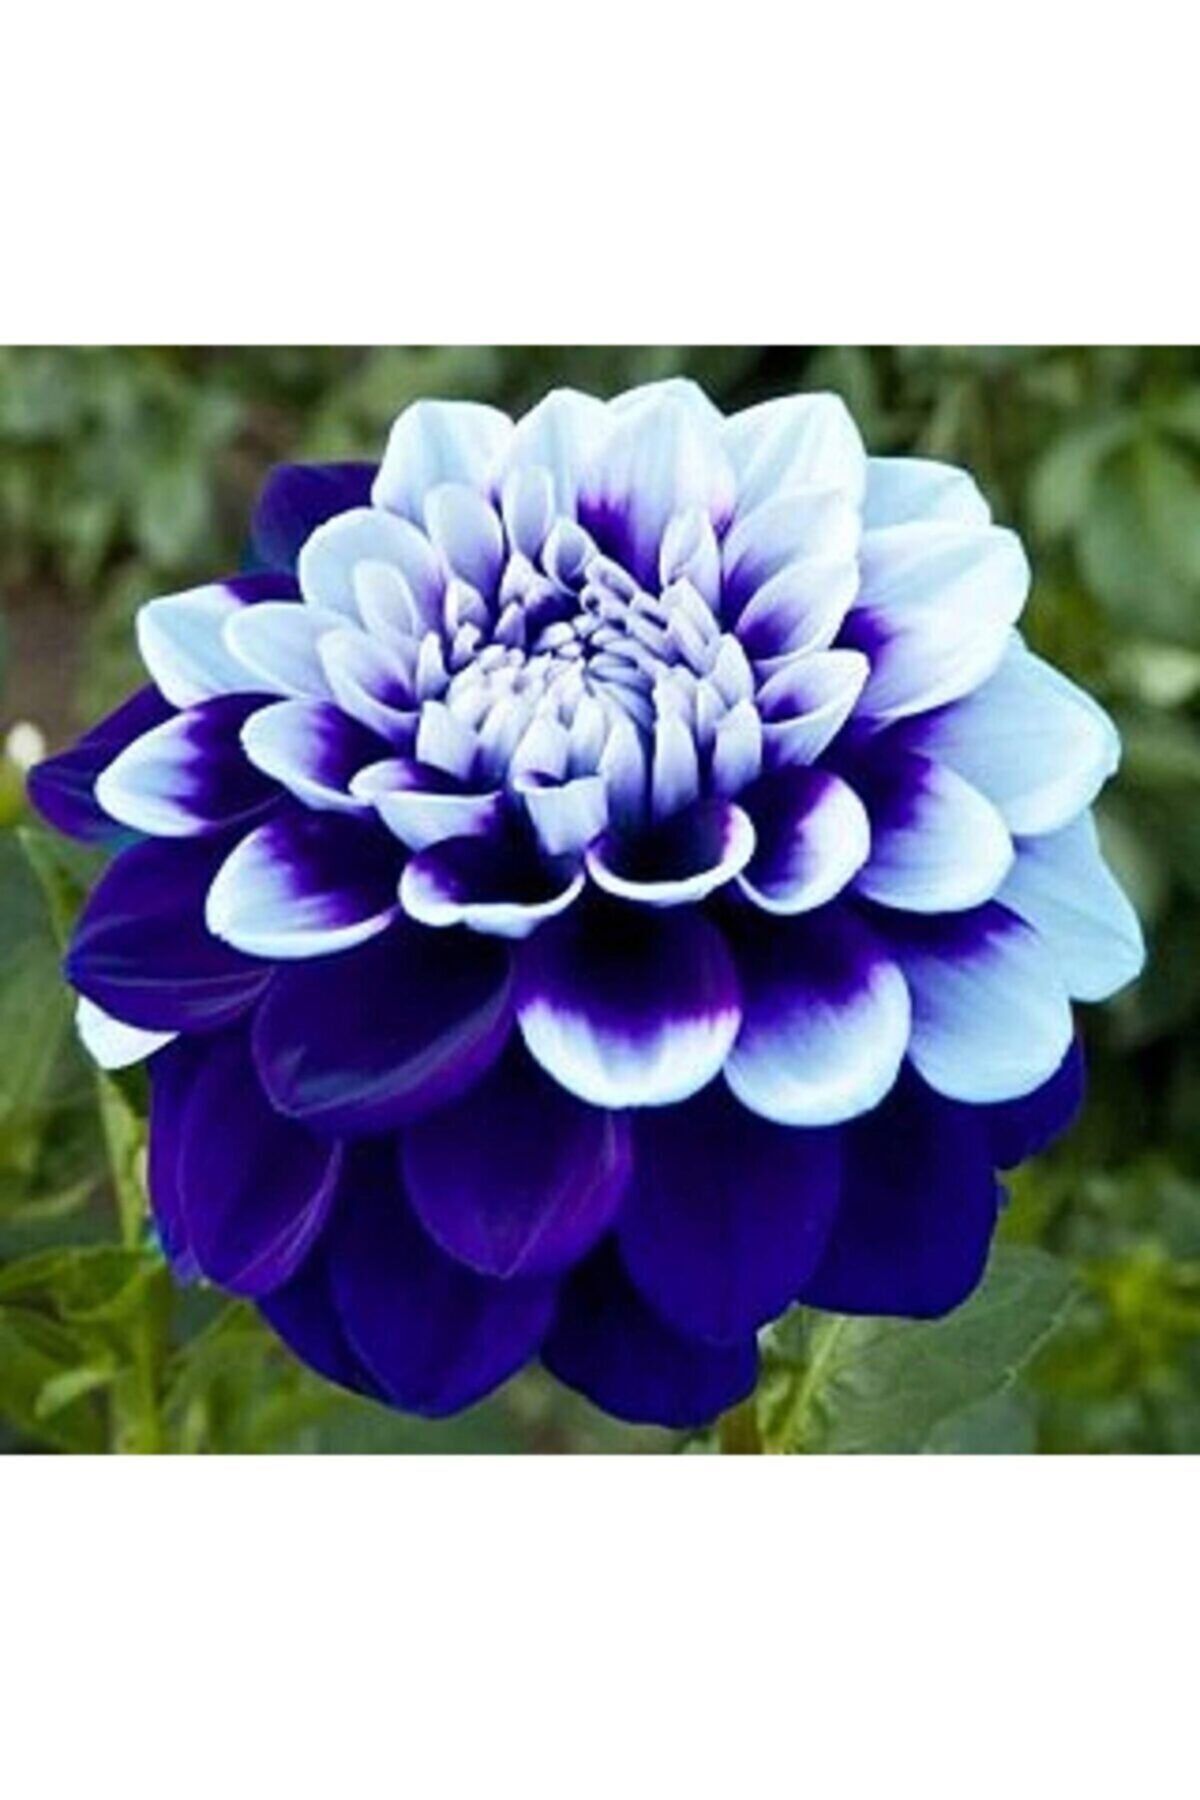 Eslem Tohumculuk 10 Adet Mavi Beyaz Renk Yıldız Çiçeği Dahlia Tohumu + 10 Adet Karışık Renk Gül Tohumu